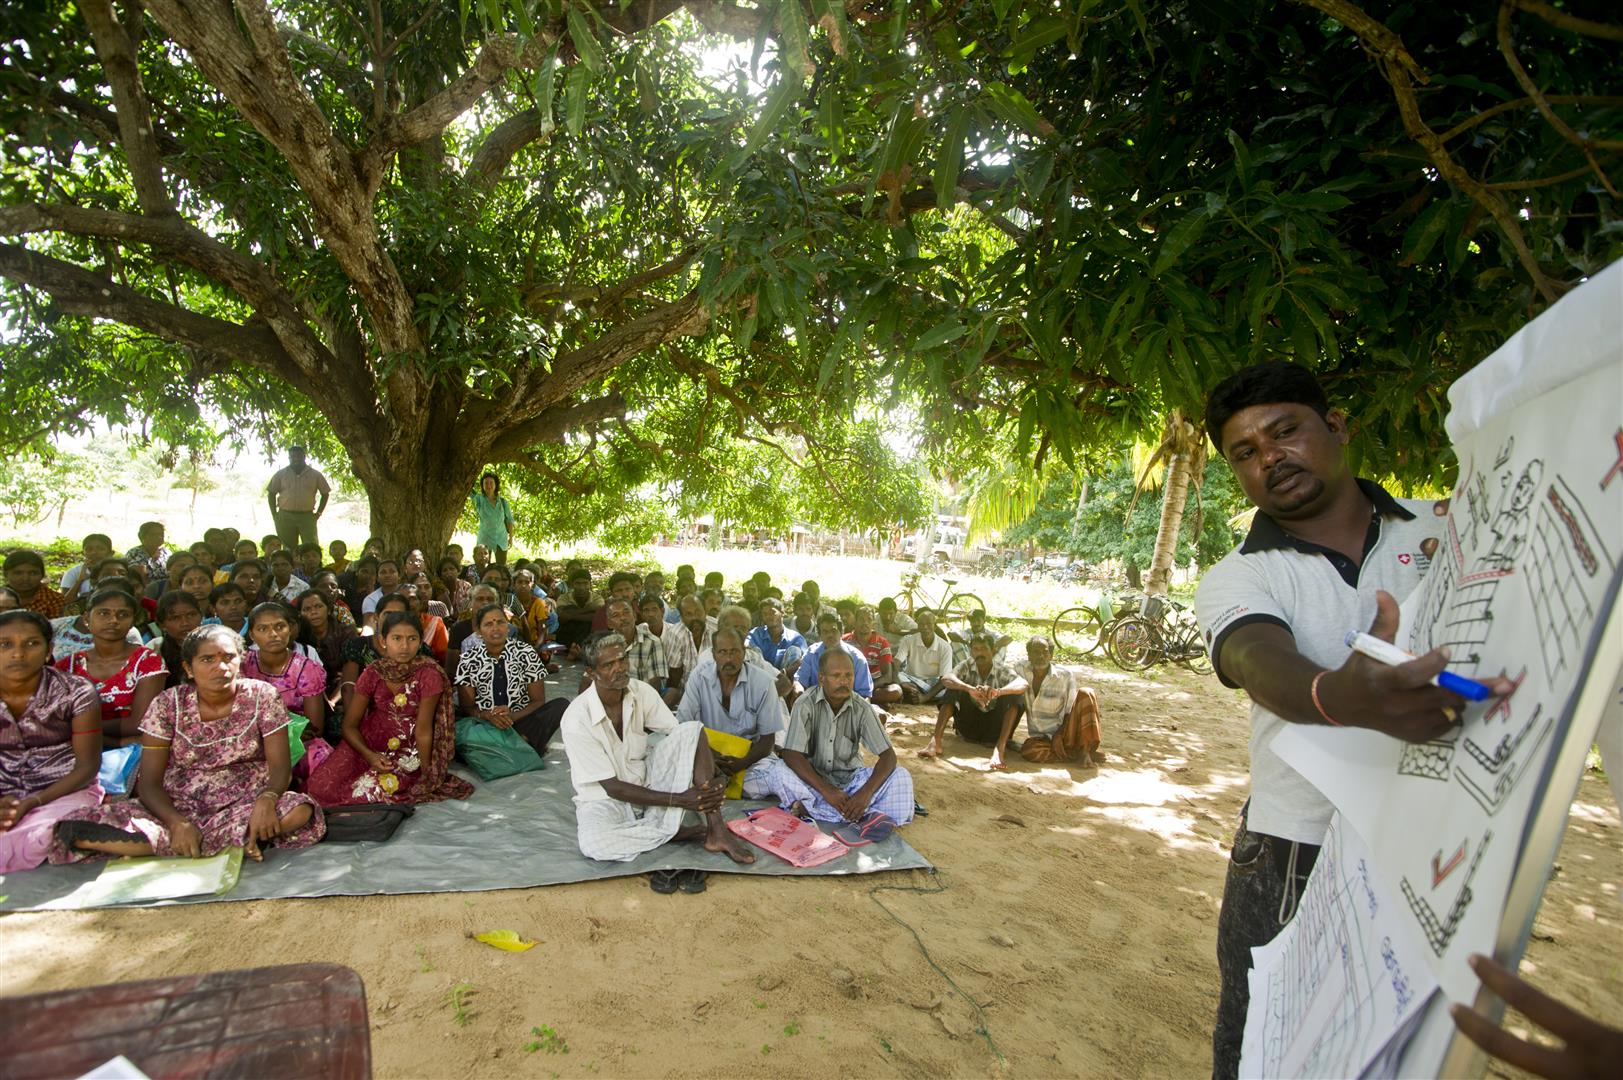 Un colaborador de la COSUDE expone un proyecto de construcción a varias decenas de aldeanos sentados en esteras.